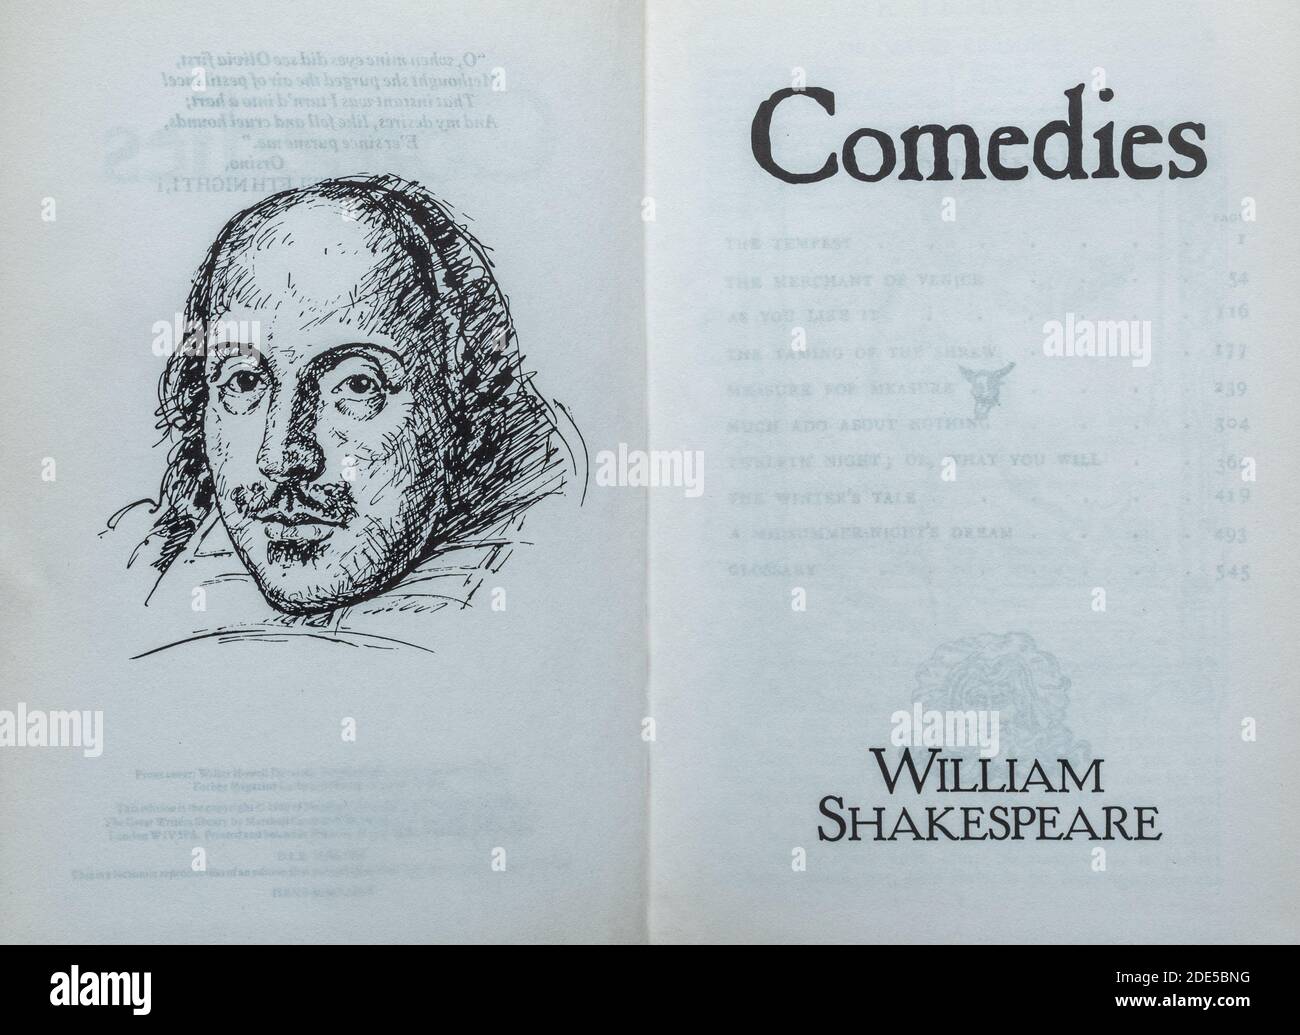 Libro de comedias - colección de obras de William Shakespeare. Página de título y dibujo del autor. Foto de stock